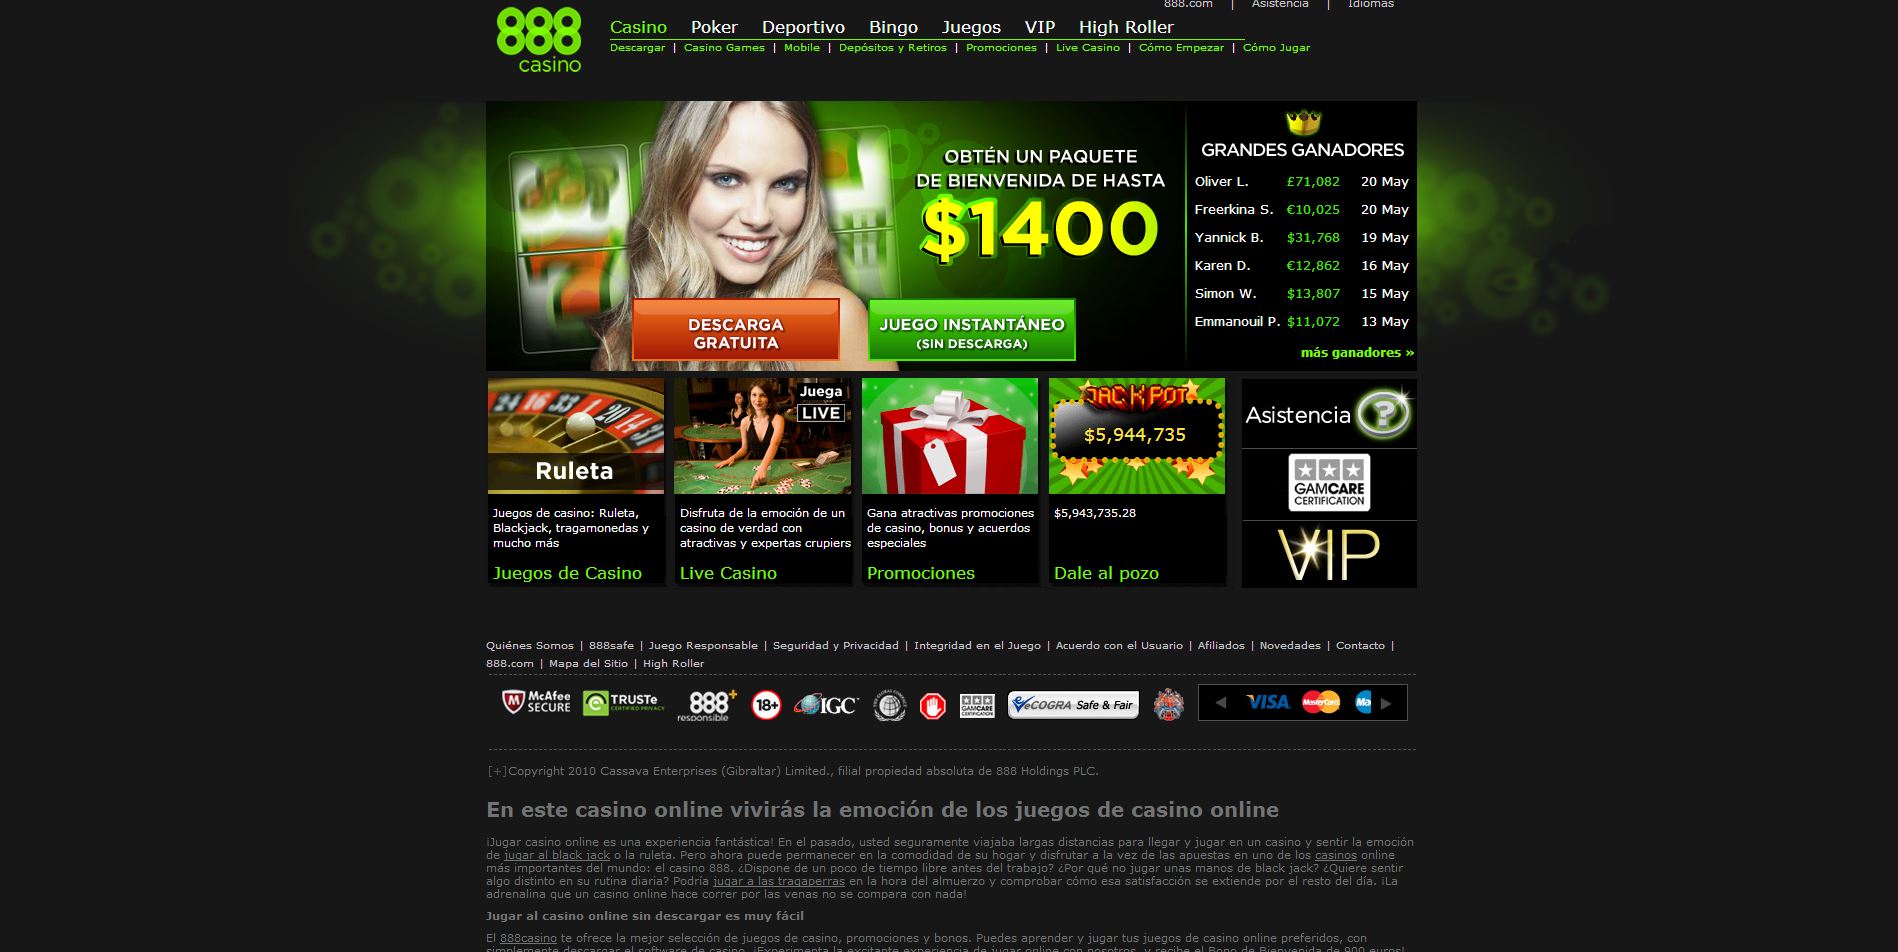 Juegos de casino gratis cleopatra casino888 Portugal online - 85763